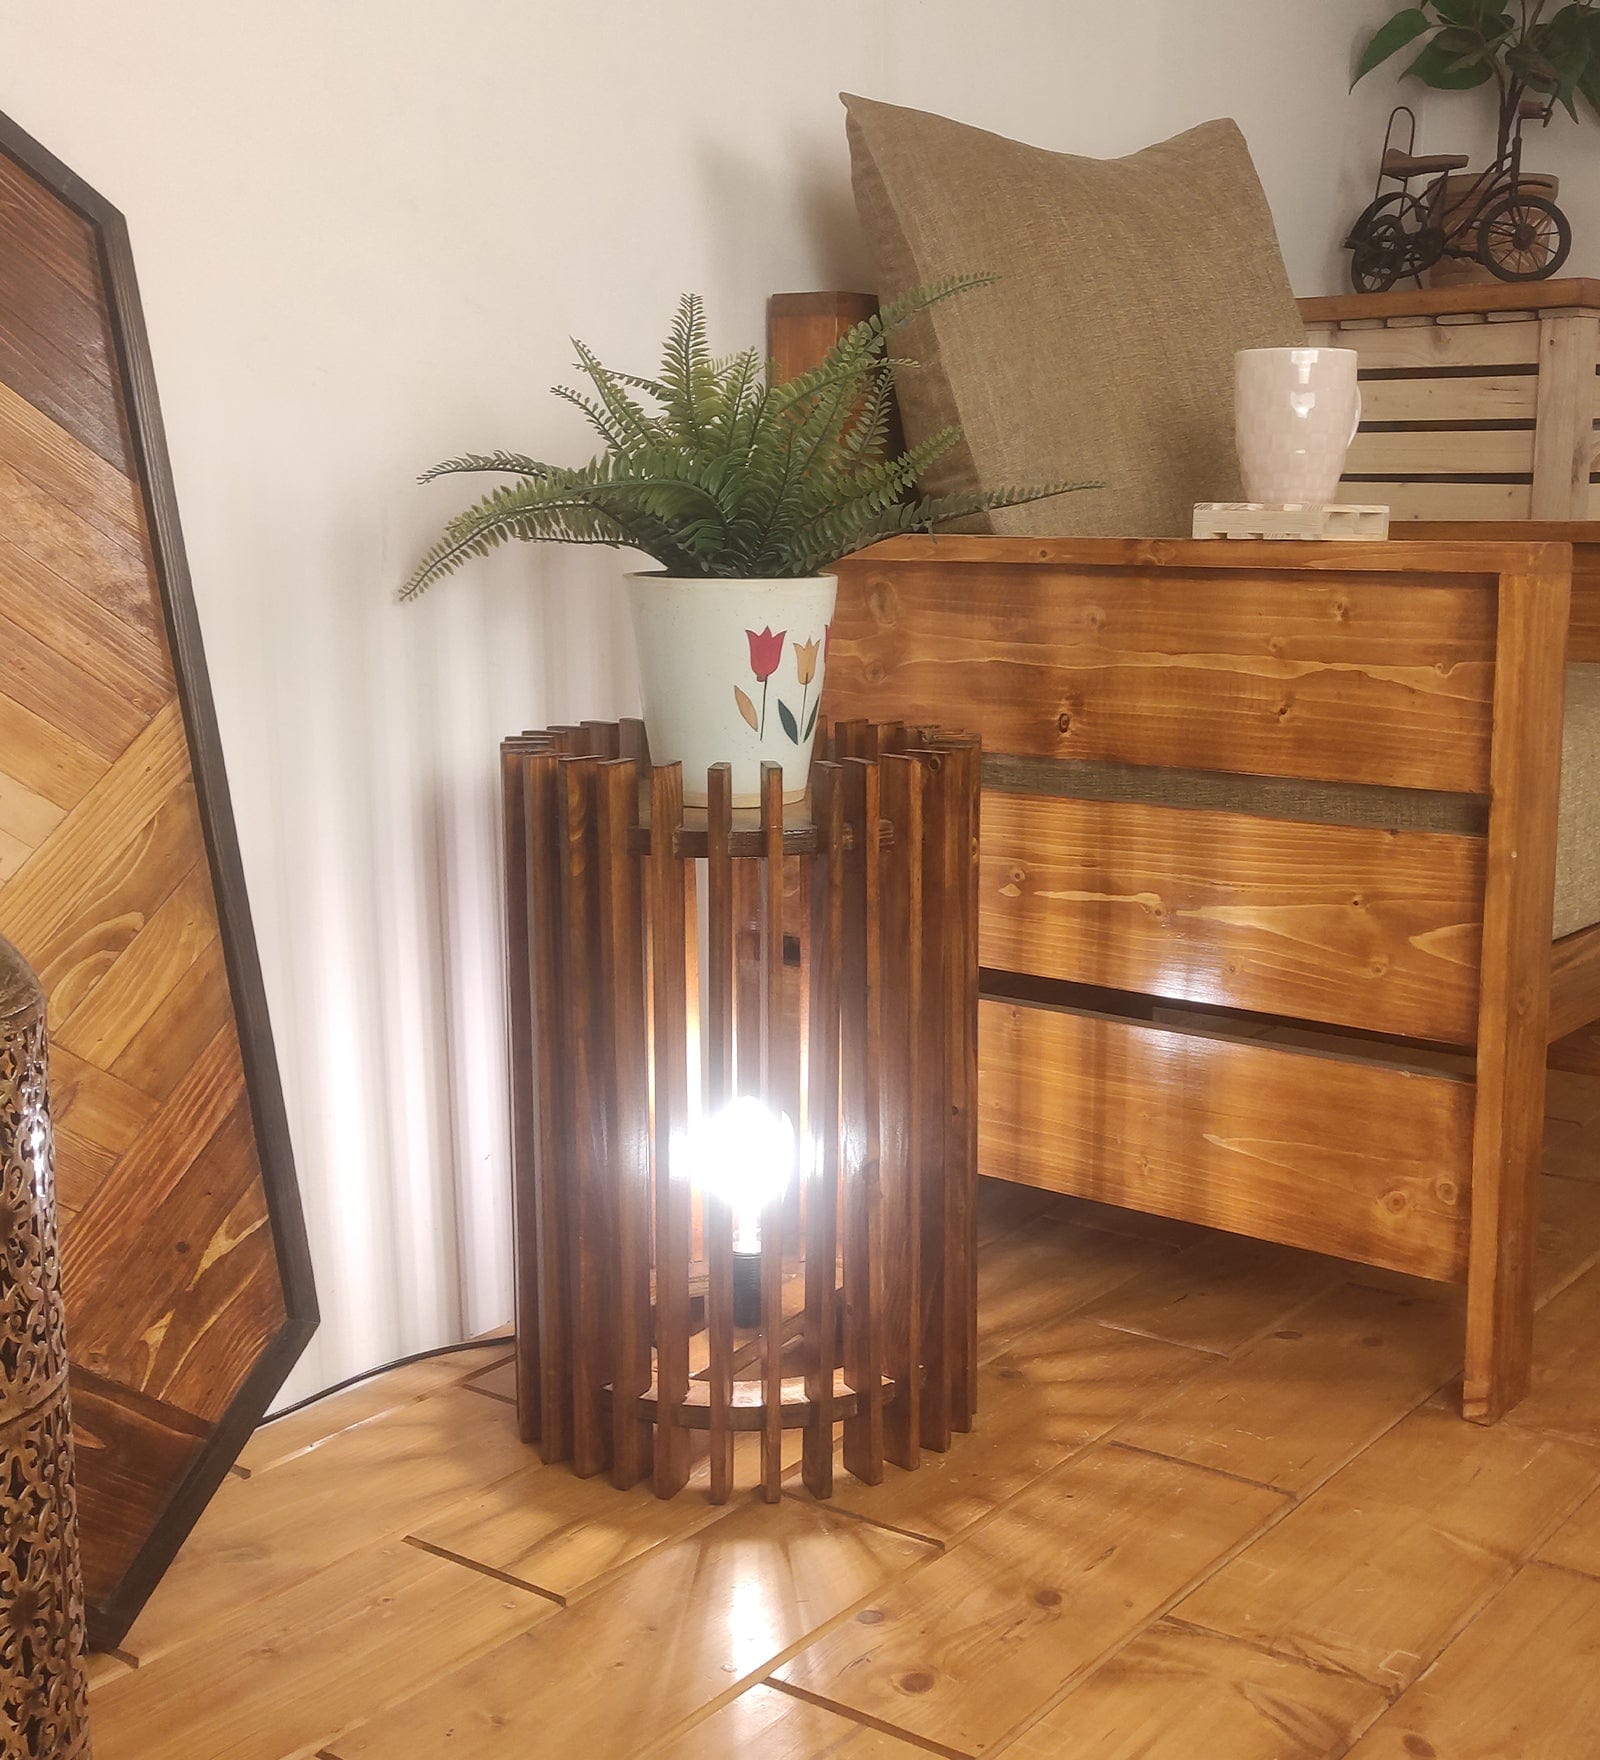 Ventus Sidekick Wooden Floor Lamp (BULB NOT INCLUDED)